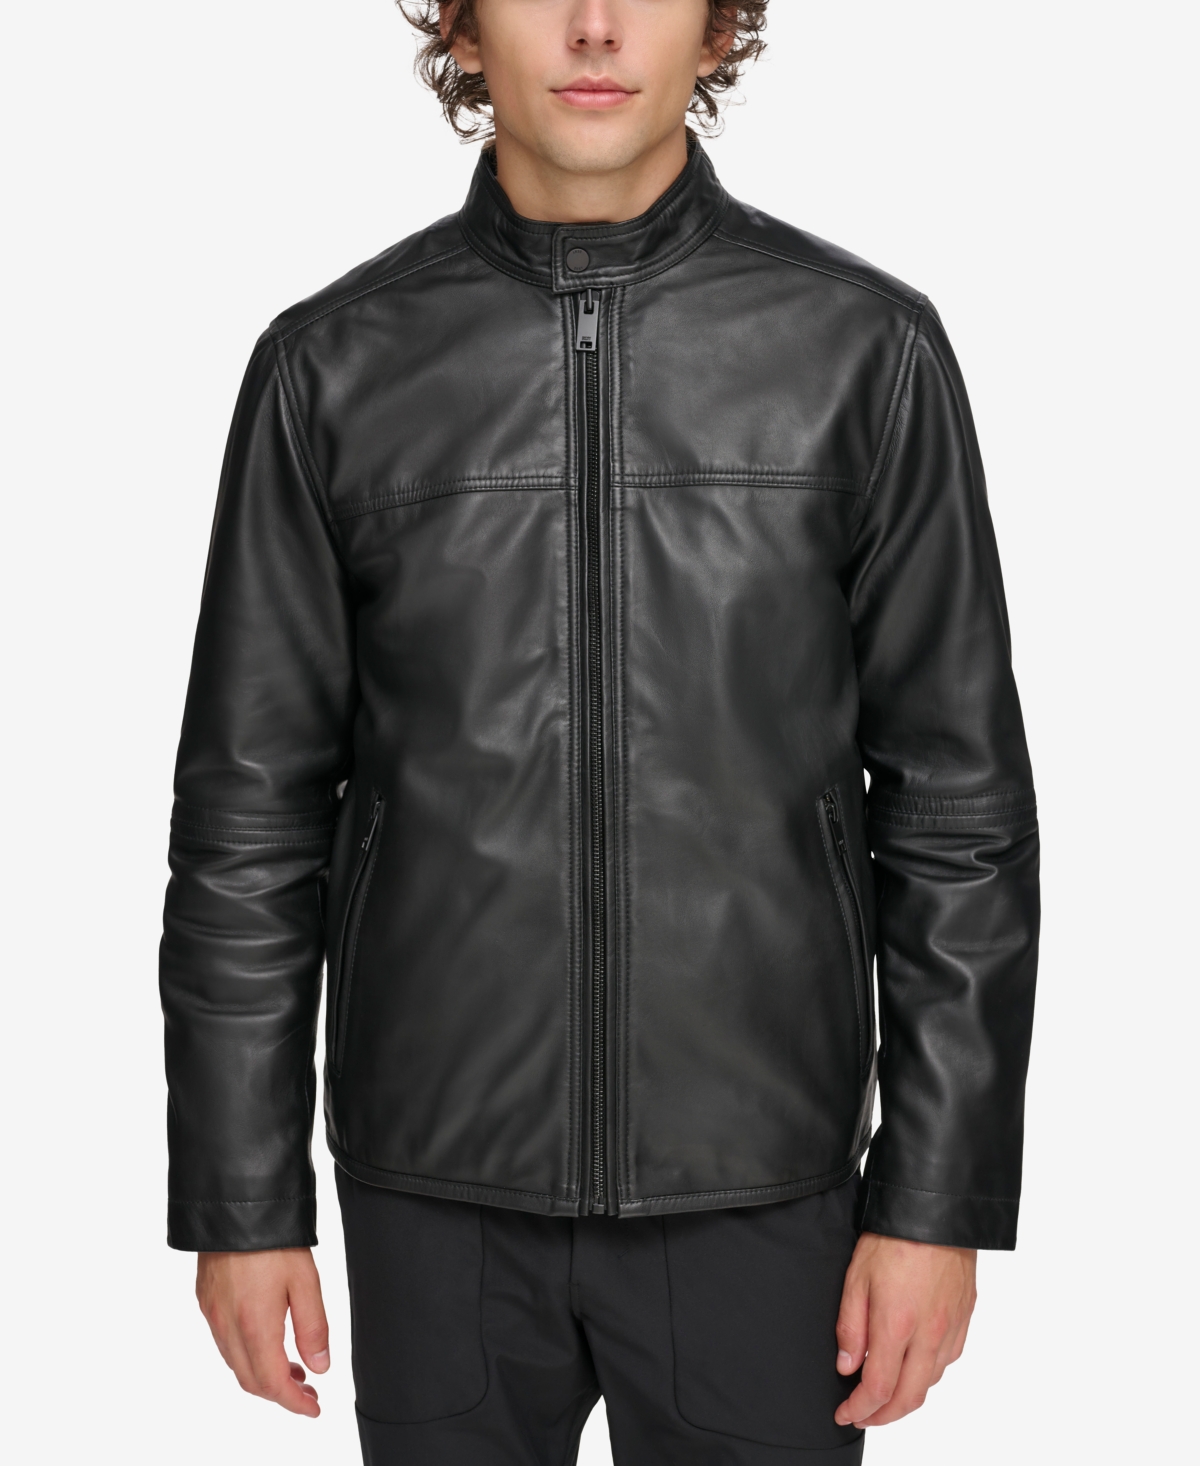 Men's Leather Racer Jacket - Black